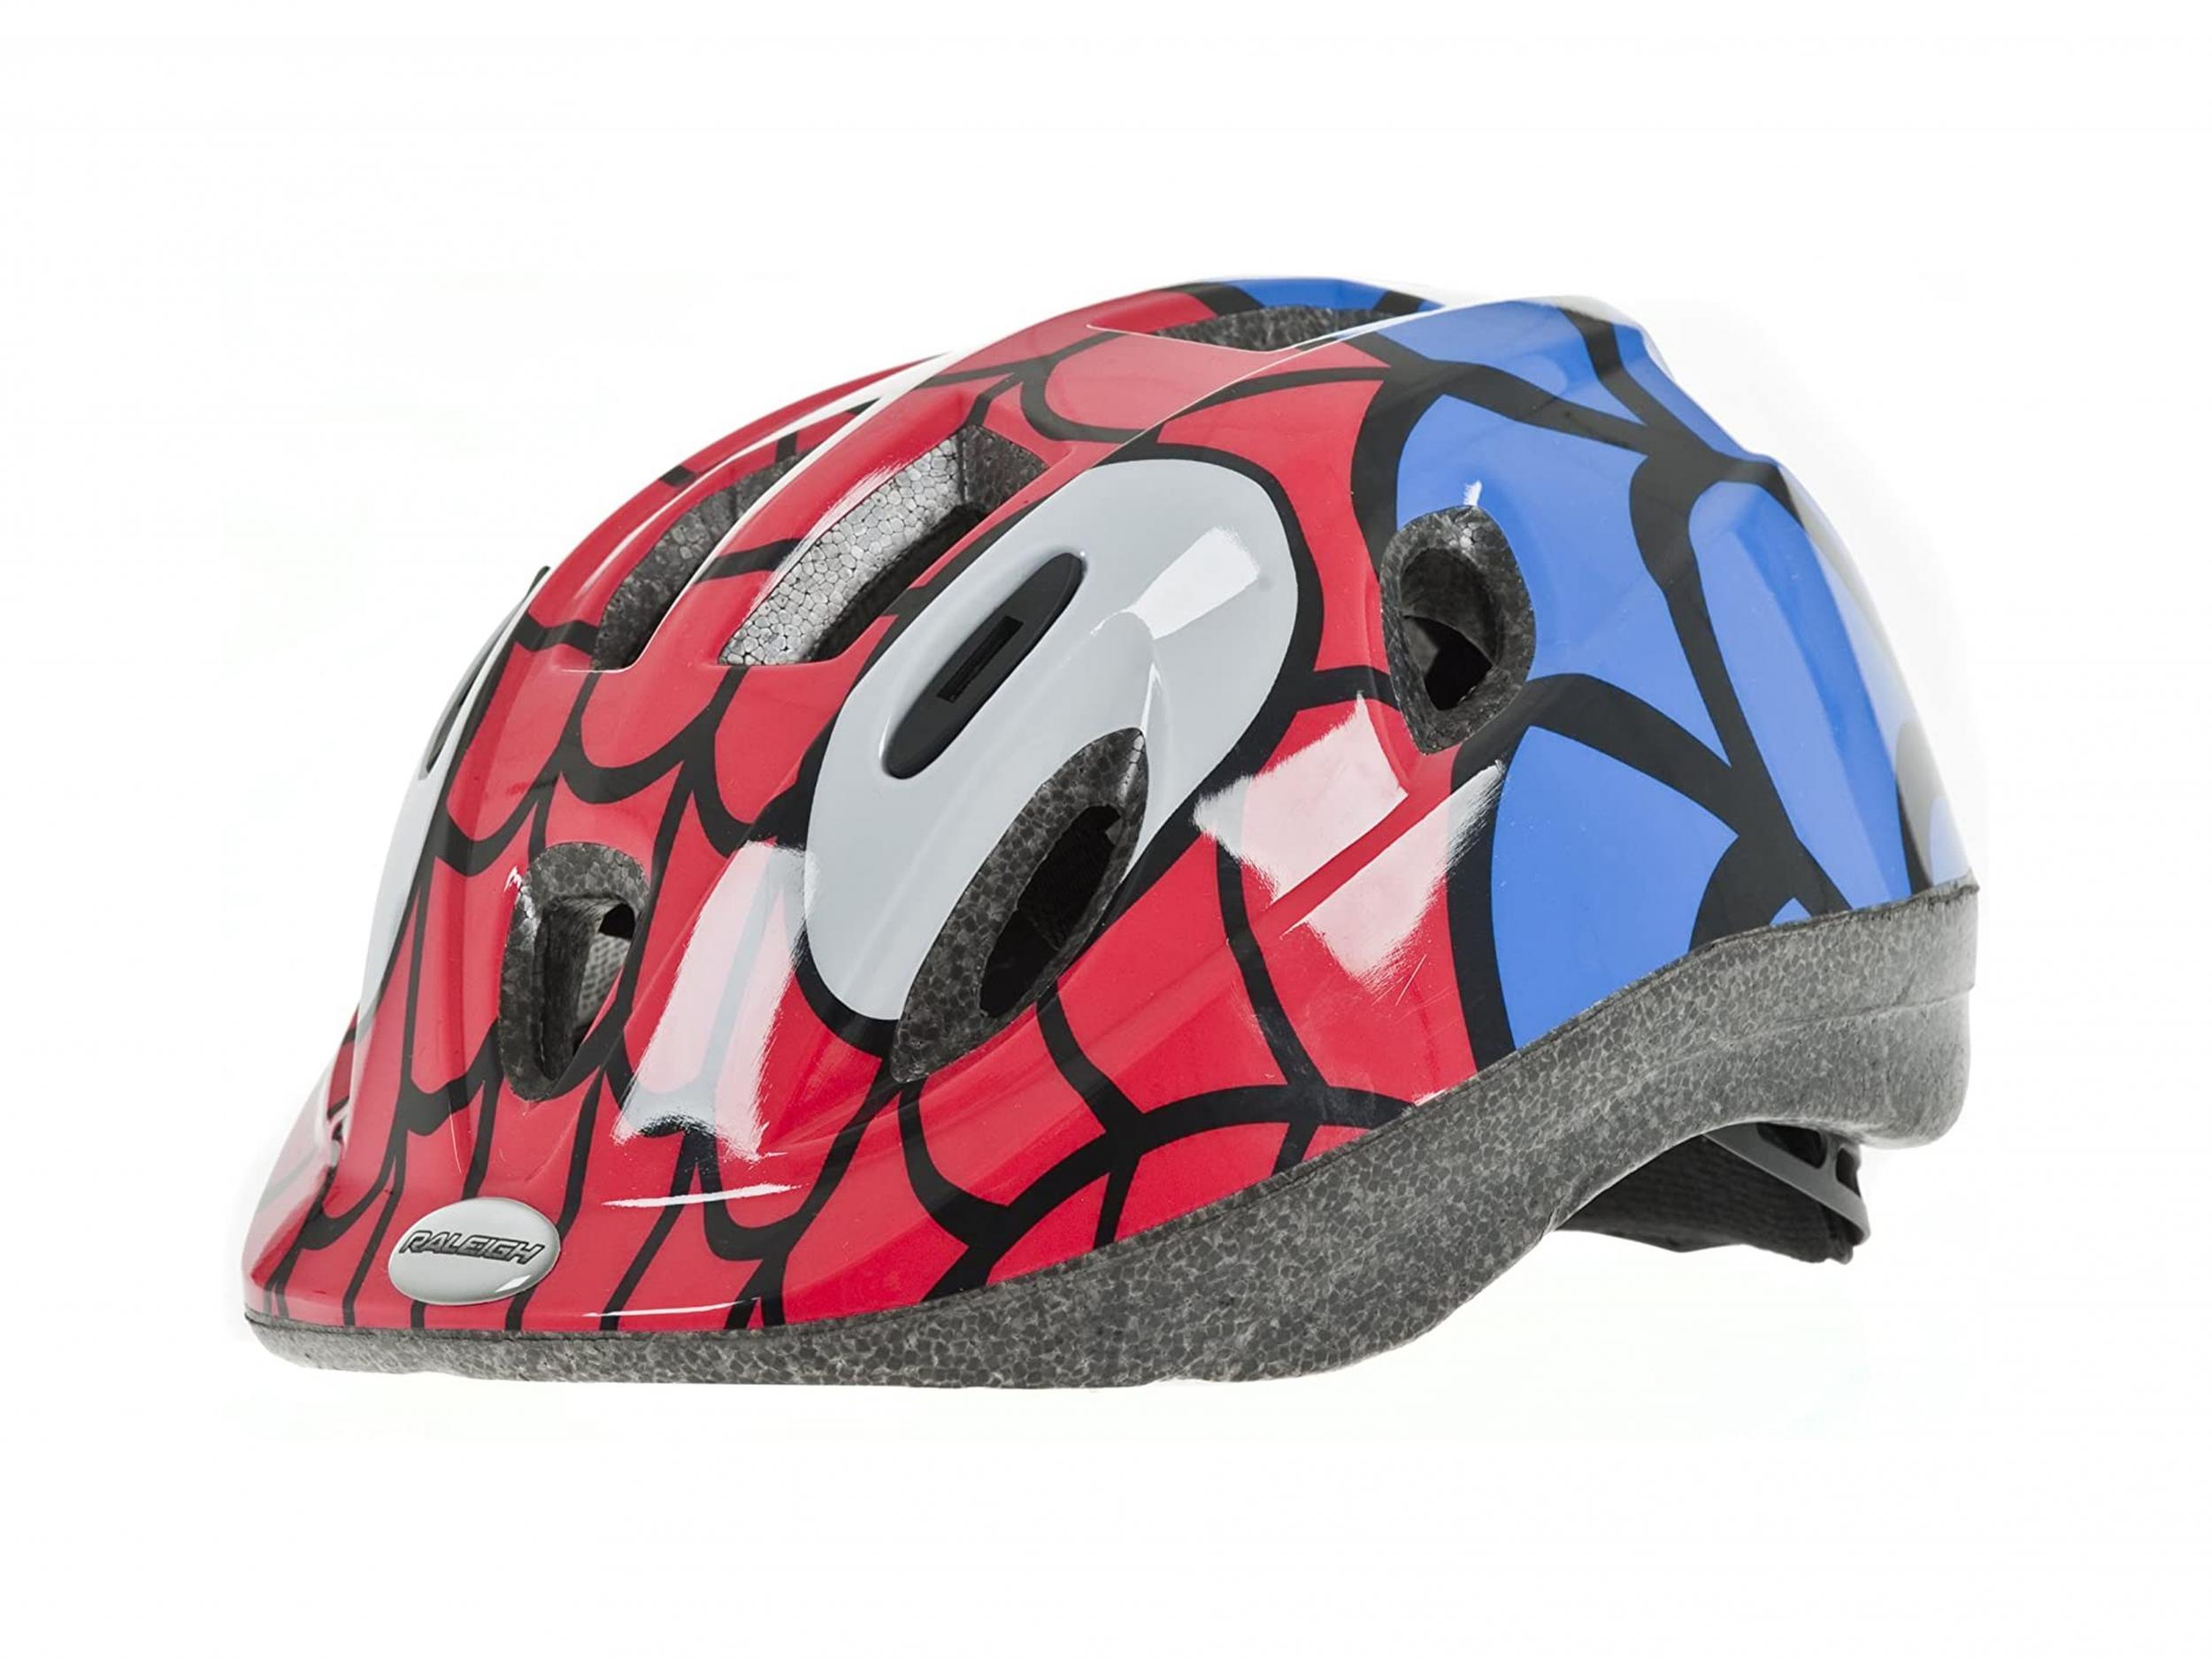 avengers Spider Man Bell Bike Helmet Child Kids Toddler Safety Girl Boys 3-5 Age 